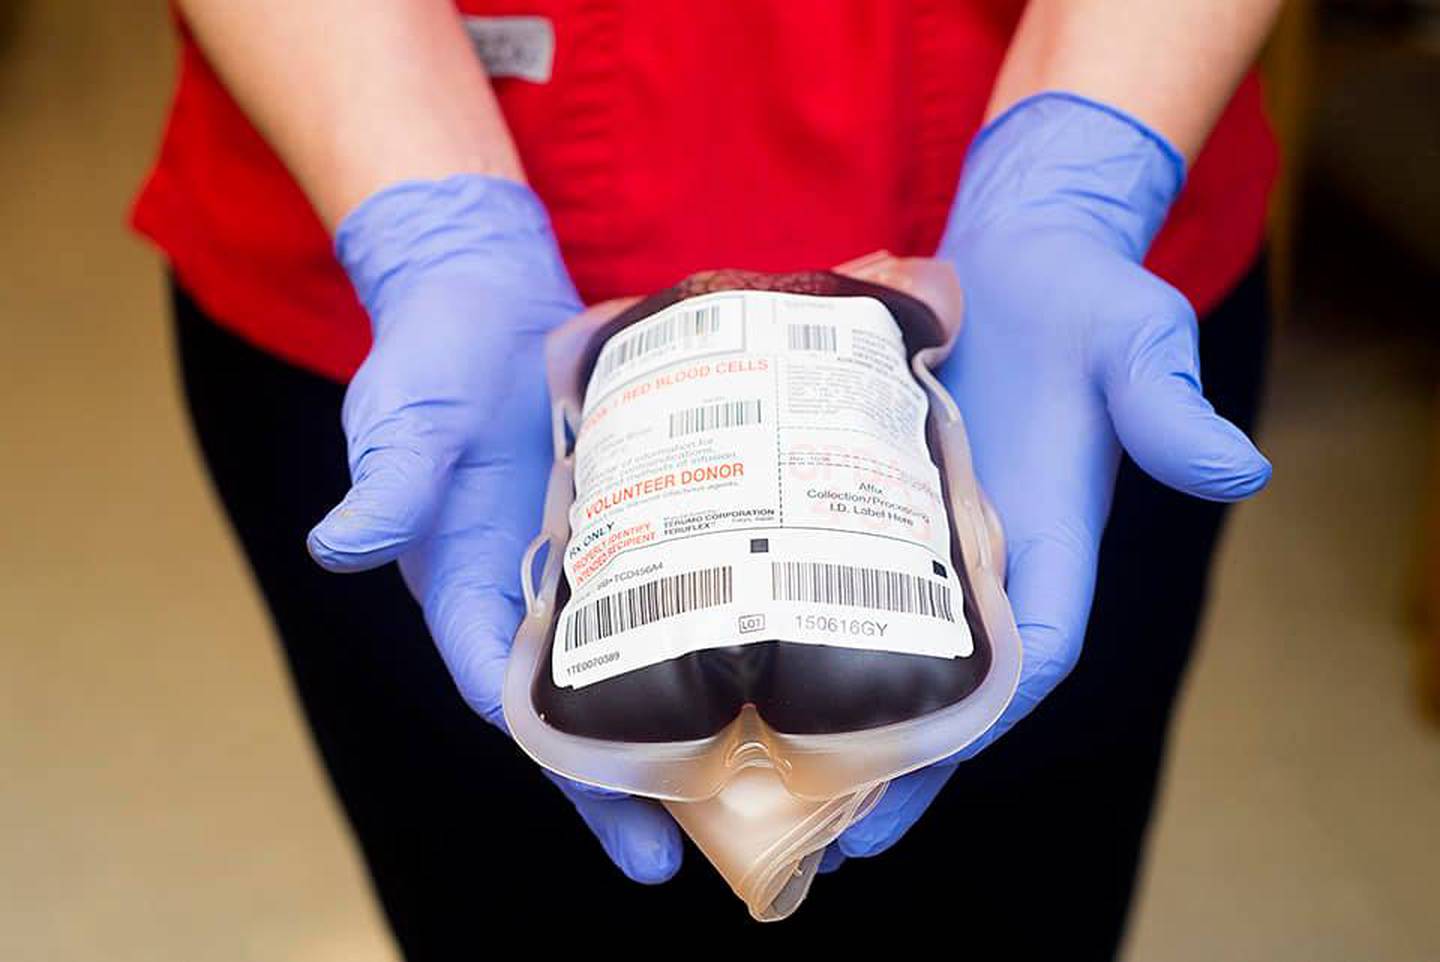 El Hospital Calderón Guardia sí le agradece su donación de sangre permitiéndole visitar pacientes con el carné de donador